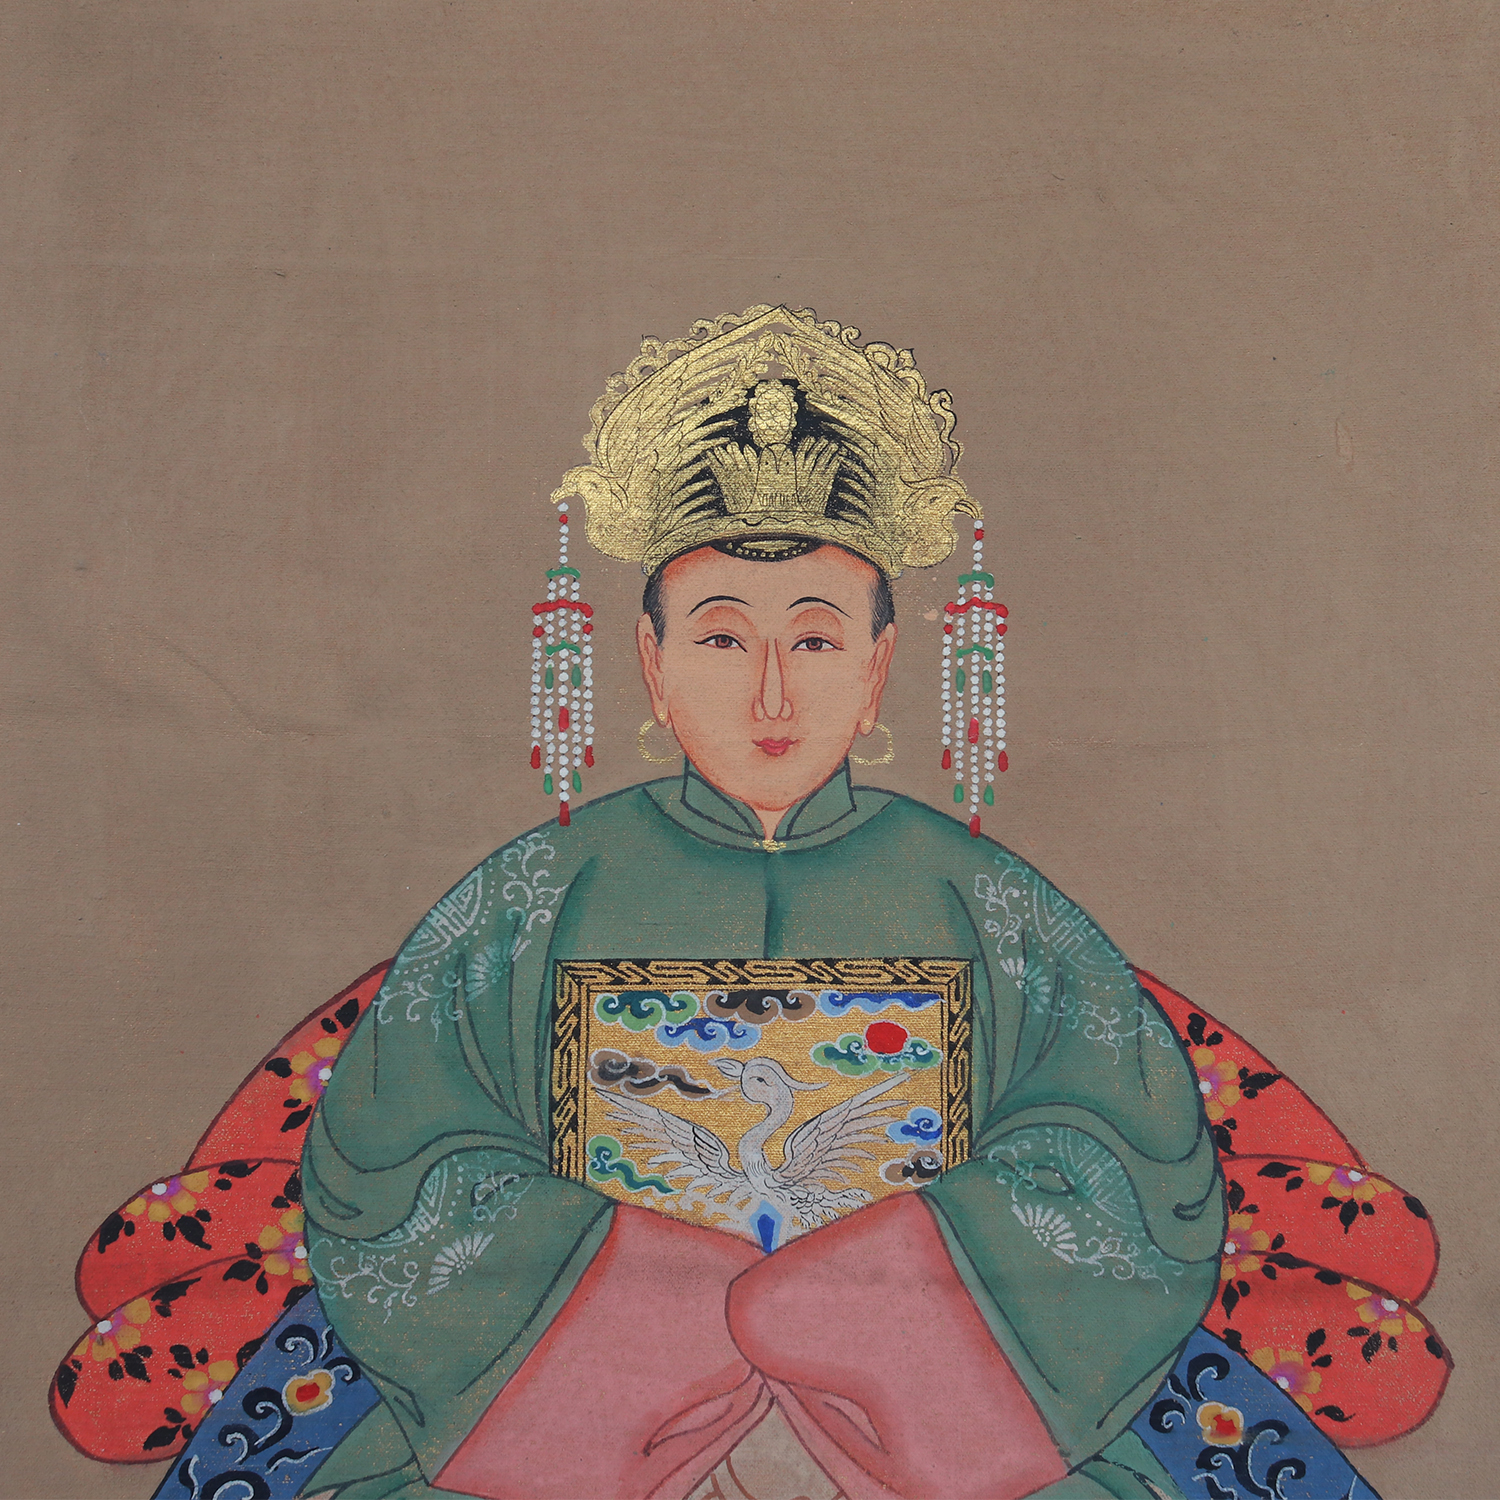 Handmålade kinesiska porträttmålningar, väggdekoration, förfädermålning